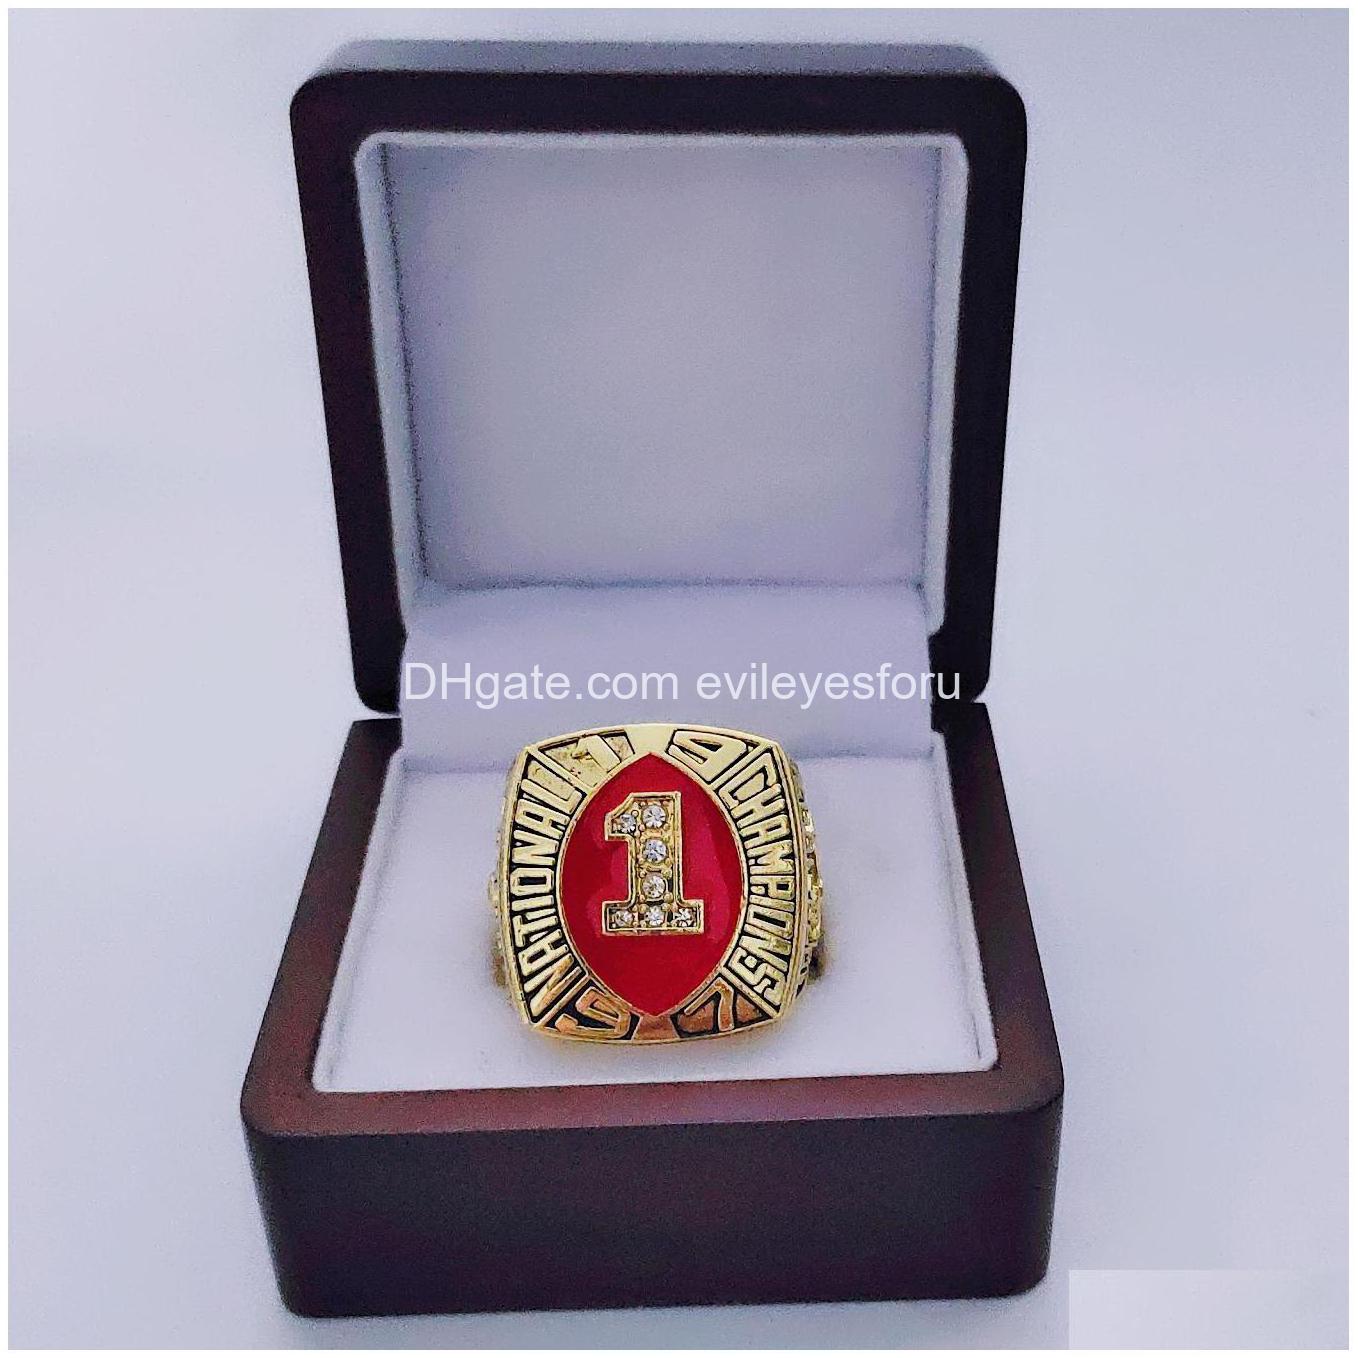 Cluster-Ringe Großhandel 1983 Championship Ring Modegeschenke von Fans und Freunden Ledertaschenteile Zubehör Drop Delivery Jewelr Dh3L5